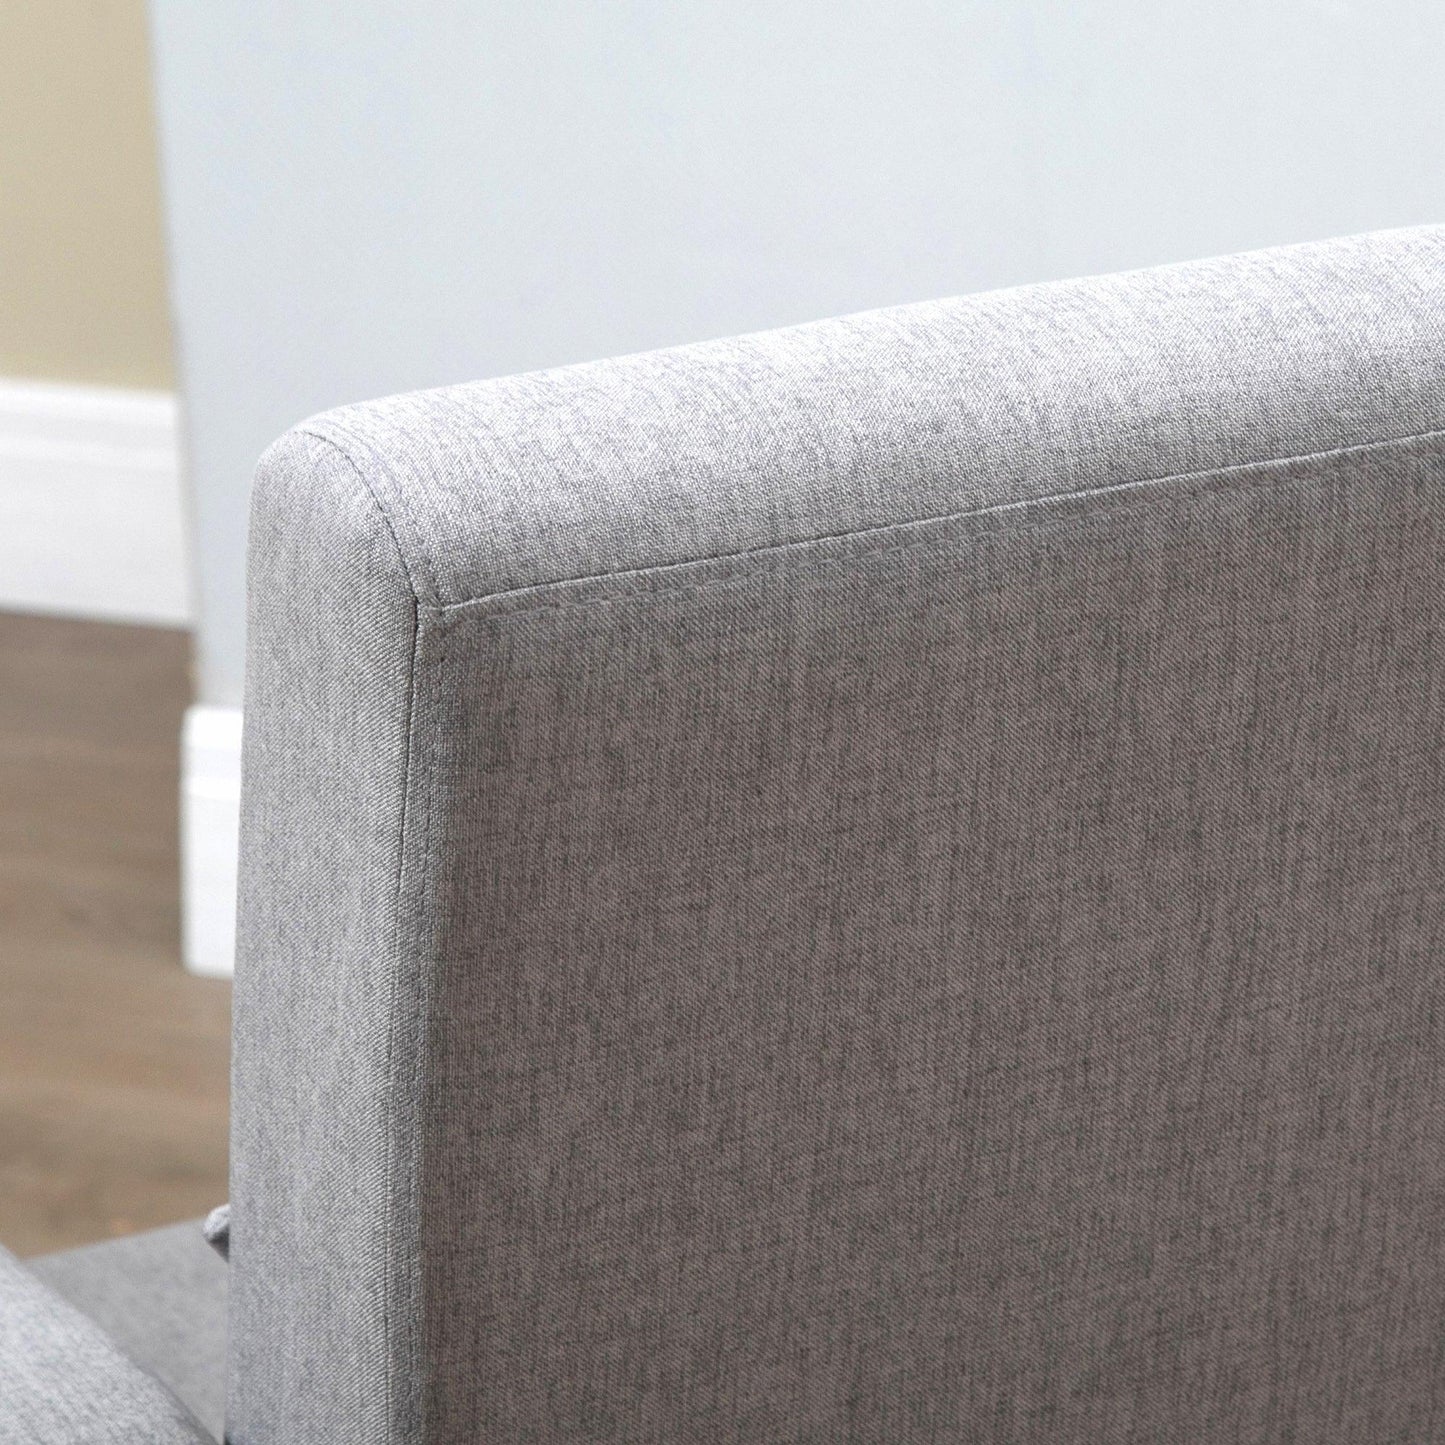 HOMCOM Grey Armchair: Comfy Lounge Sofa - ALL4U RETAILER LTD